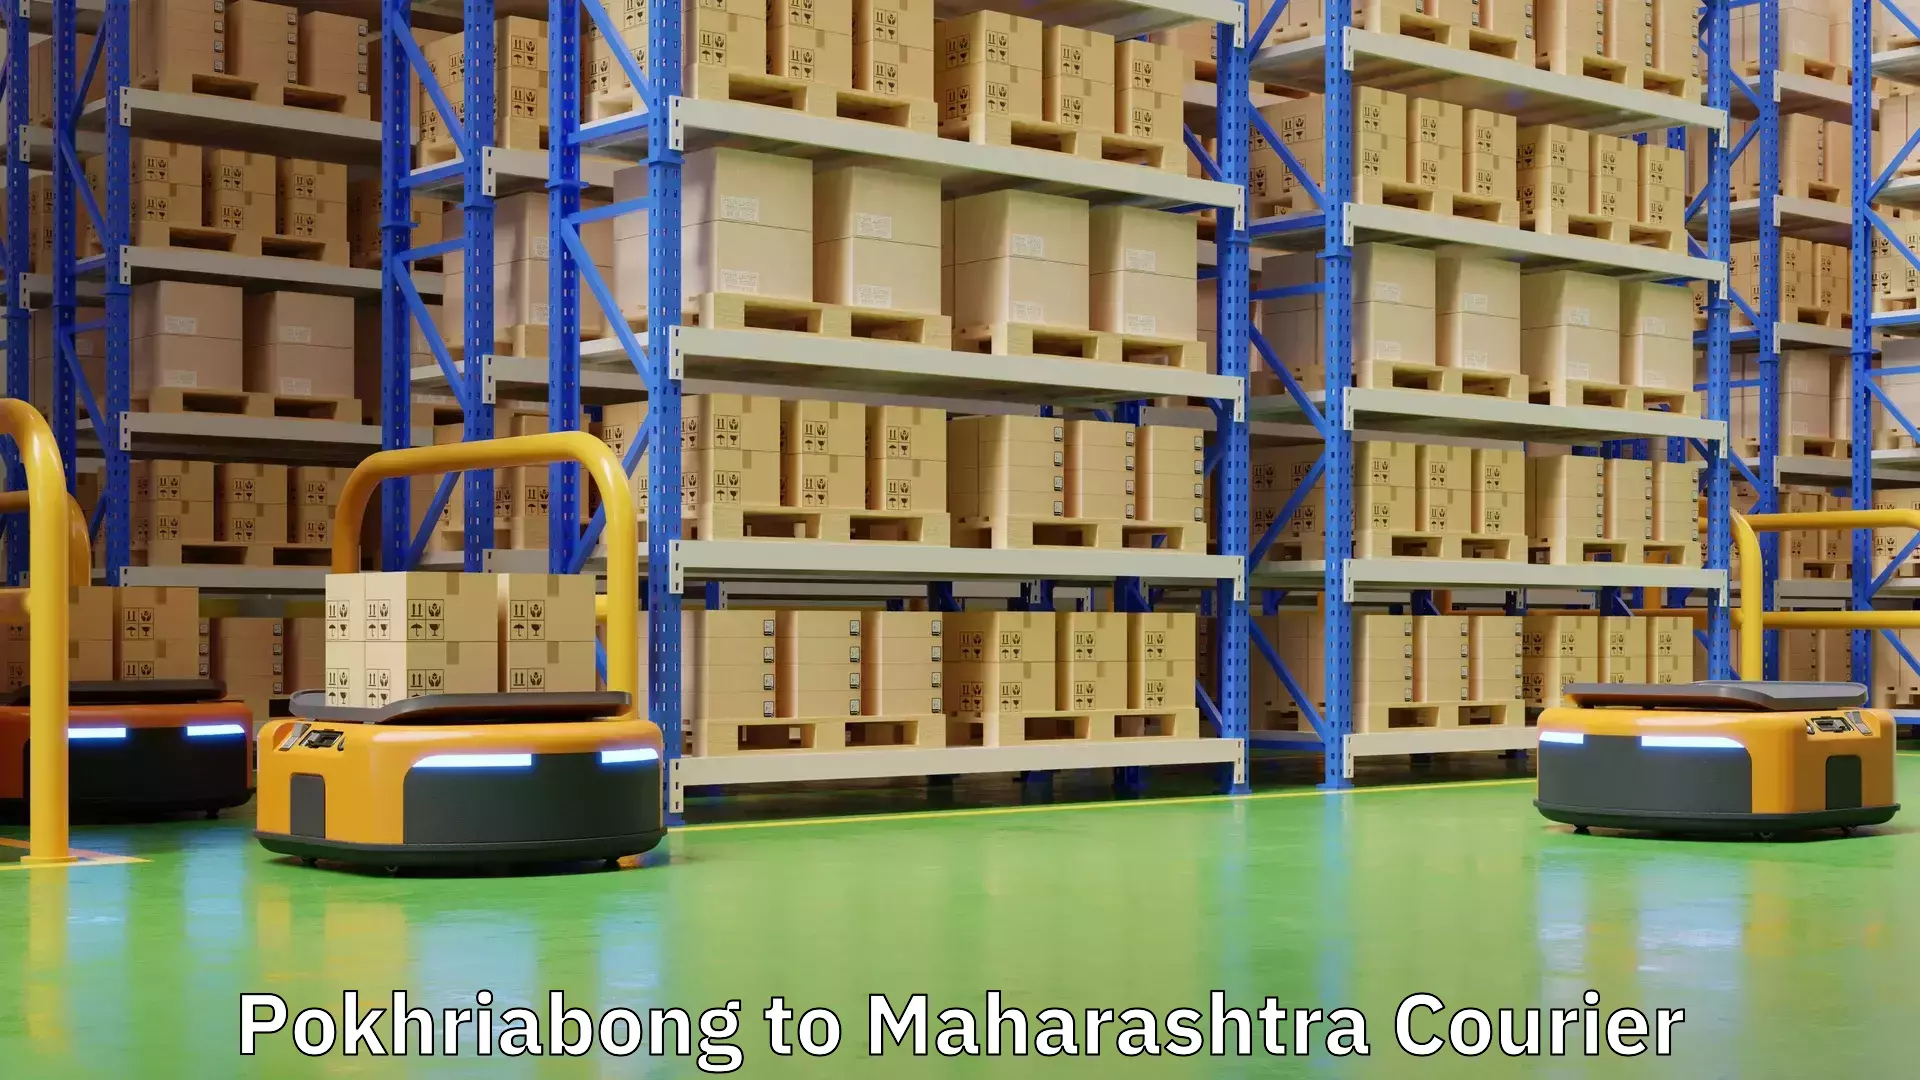 Enhanced shipping experience Pokhriabong to Maharashtra